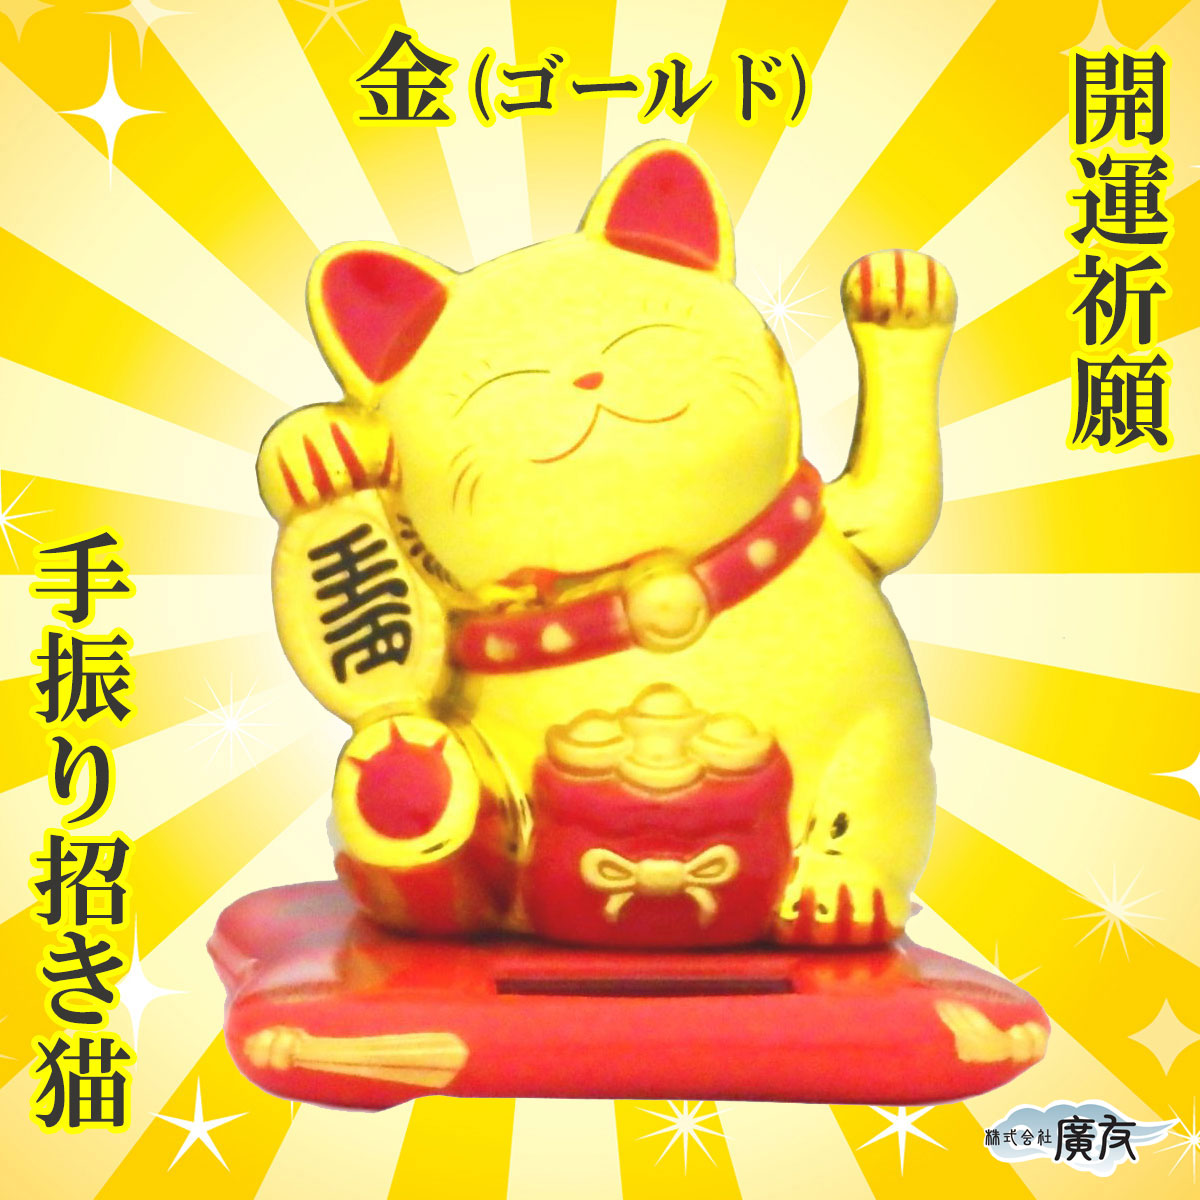 招き猫 置物 商売繁盛 ソーラーで動く置物 幸せを呼ぶ 金色招き猫 